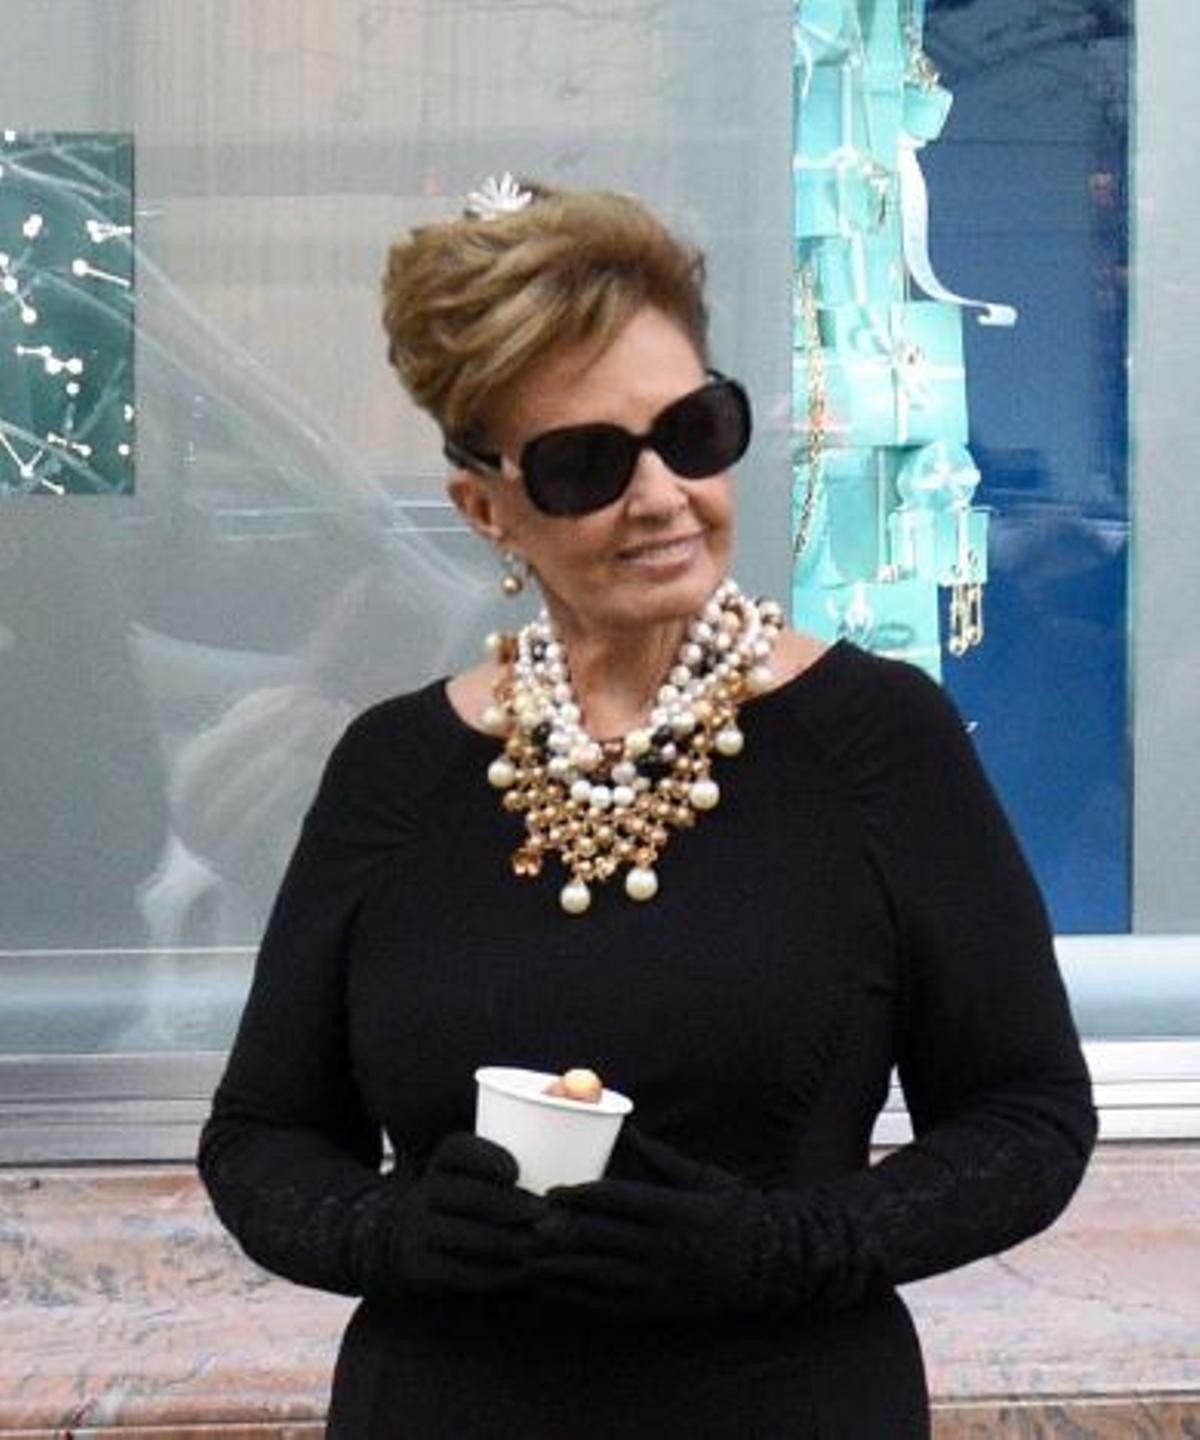 Vestida como Audrey Hepburn en 'Desayuno con diamantes' para 'Las Campos'